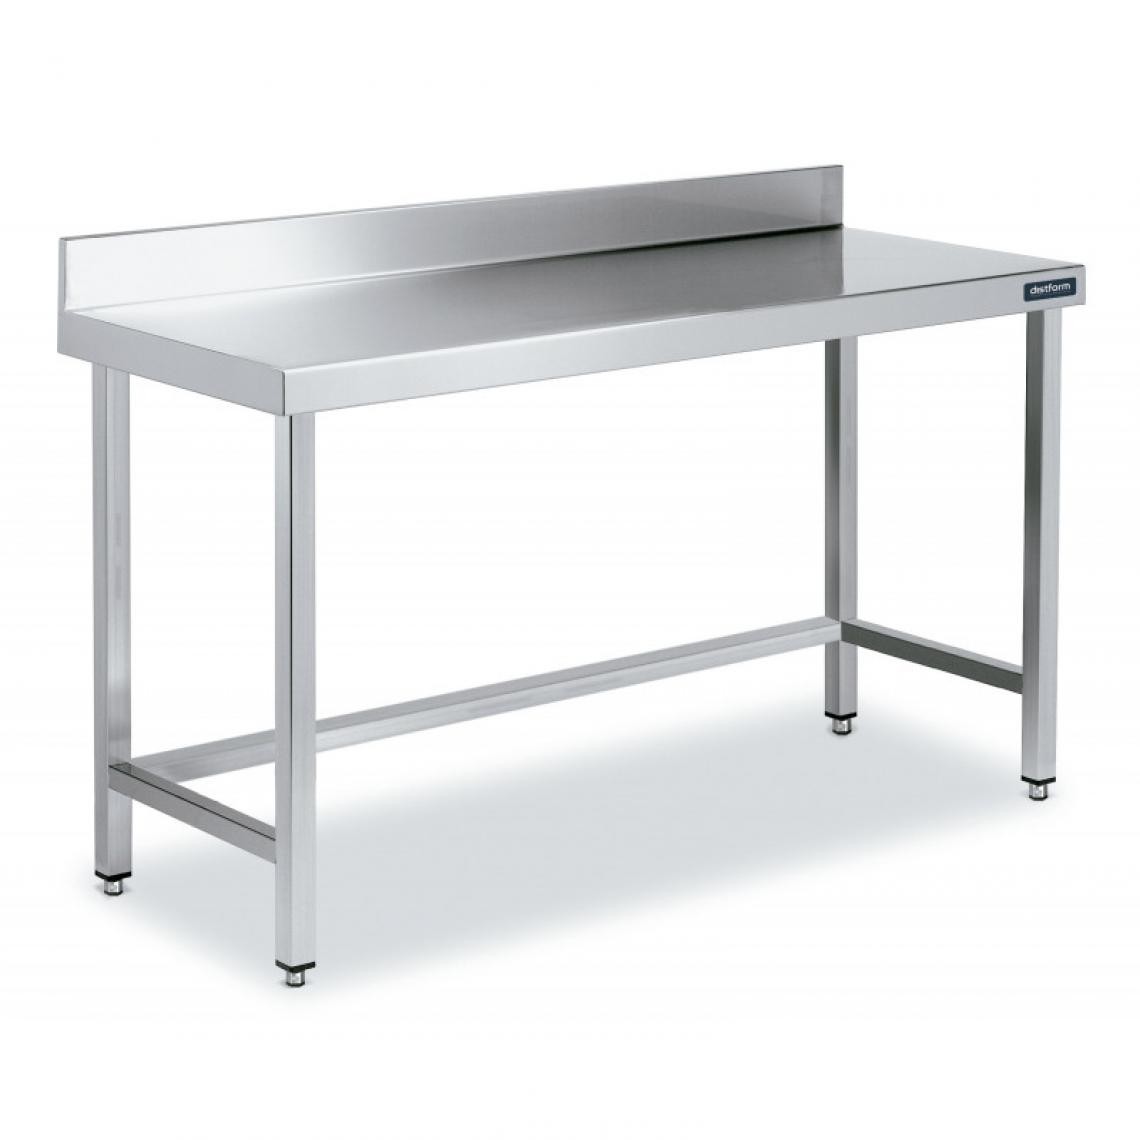 DISTFORM - Table Adossée en Inox avec Renforts Profondeur 600 mm - Distform - Acier inoxydable1400x600 - Tables à manger